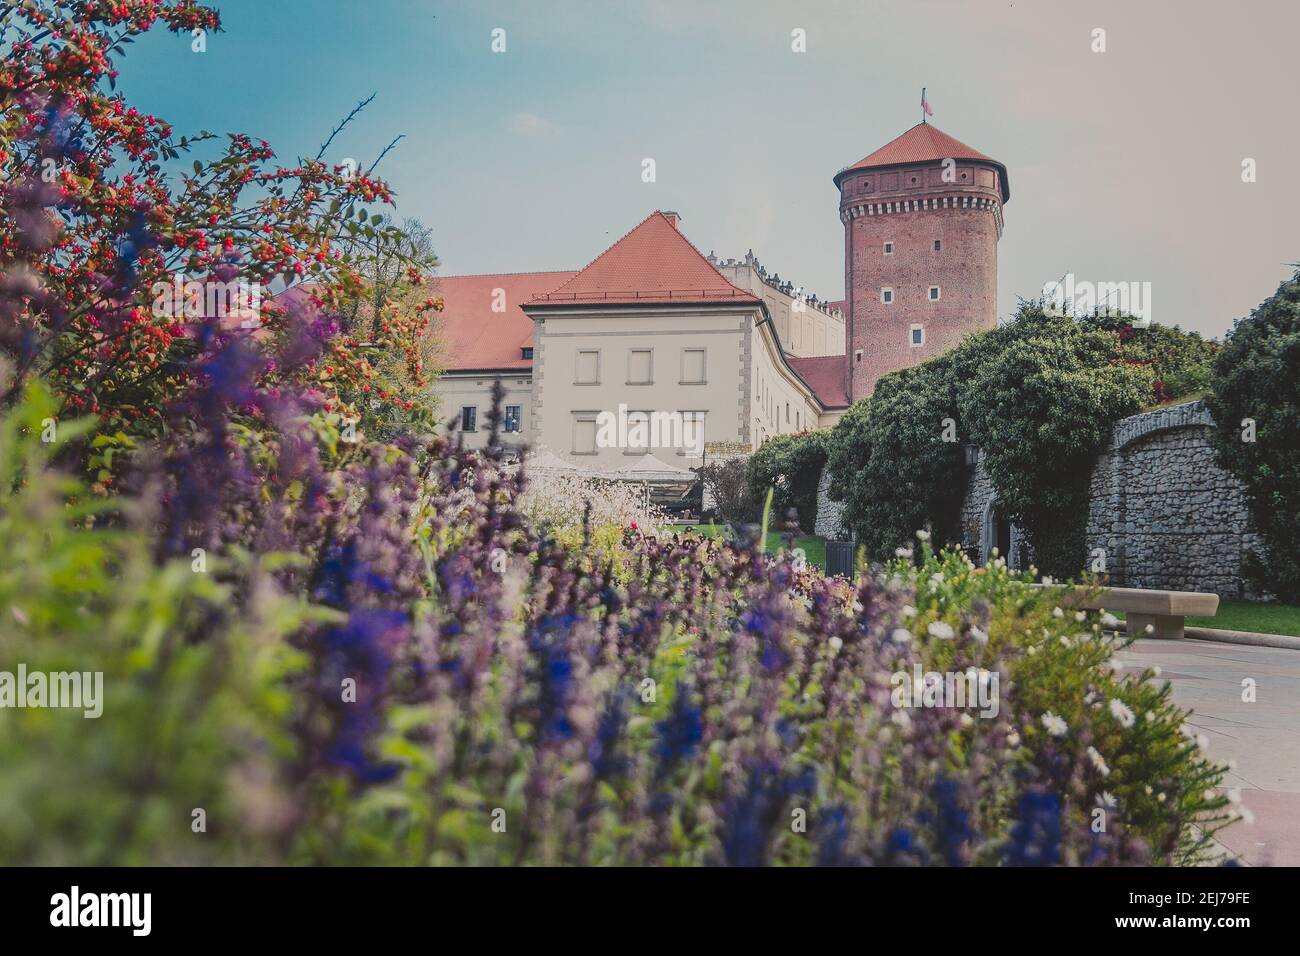 Wawel Senator Turm mit Schloss, Rasen, Efeu, Regenschirme, Blumen und Sträucher Stockfoto